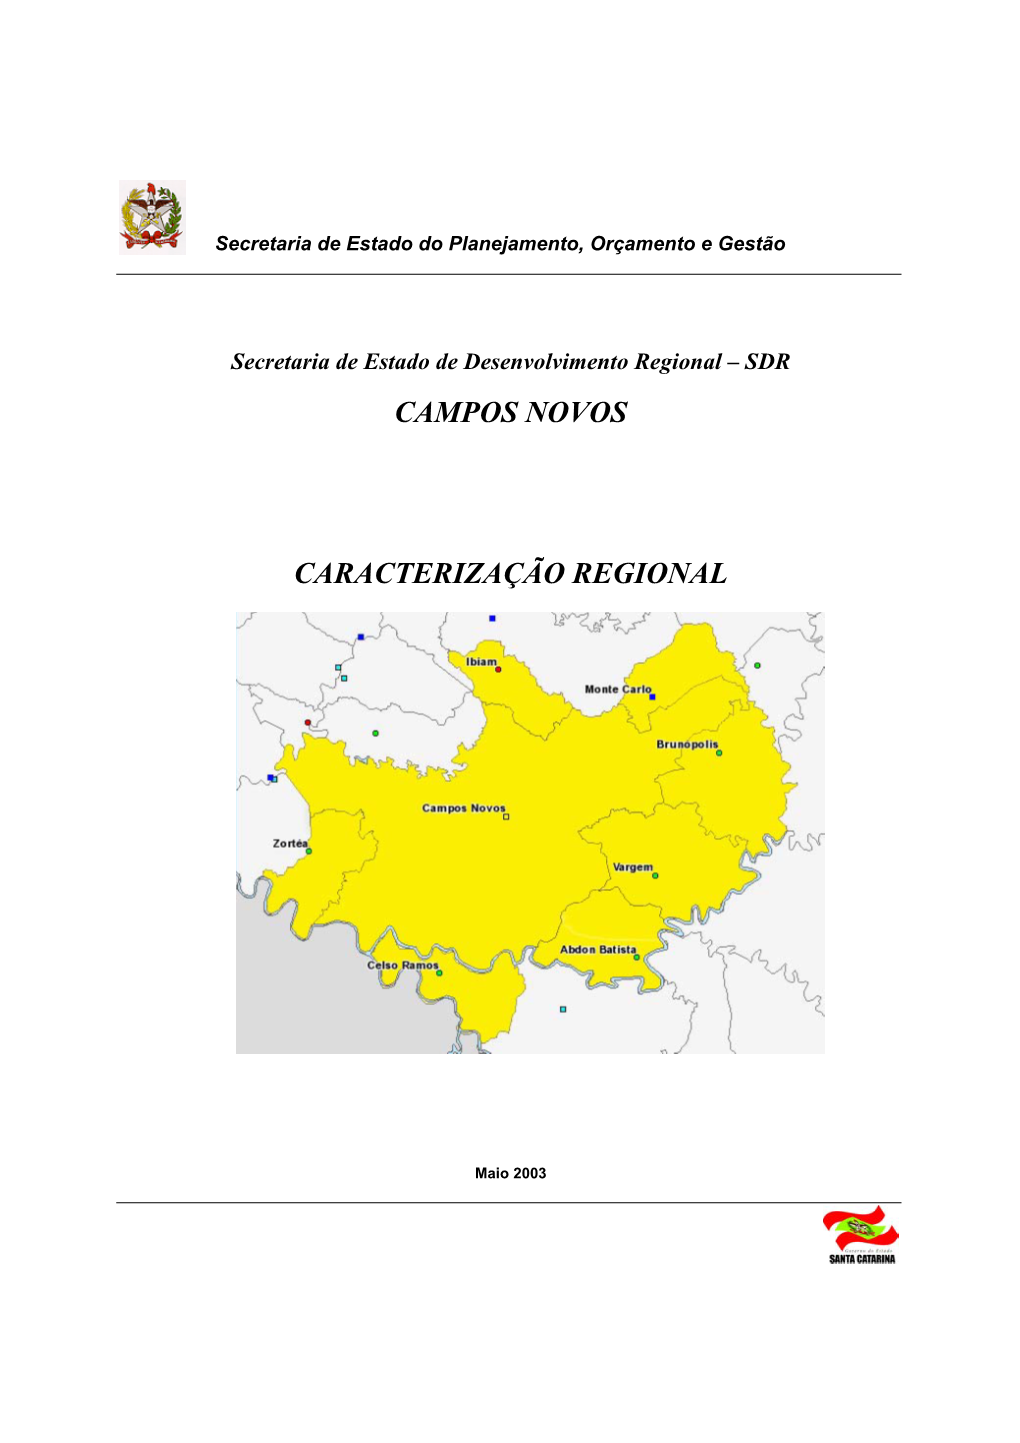 Campos Novos Caracterização Regional